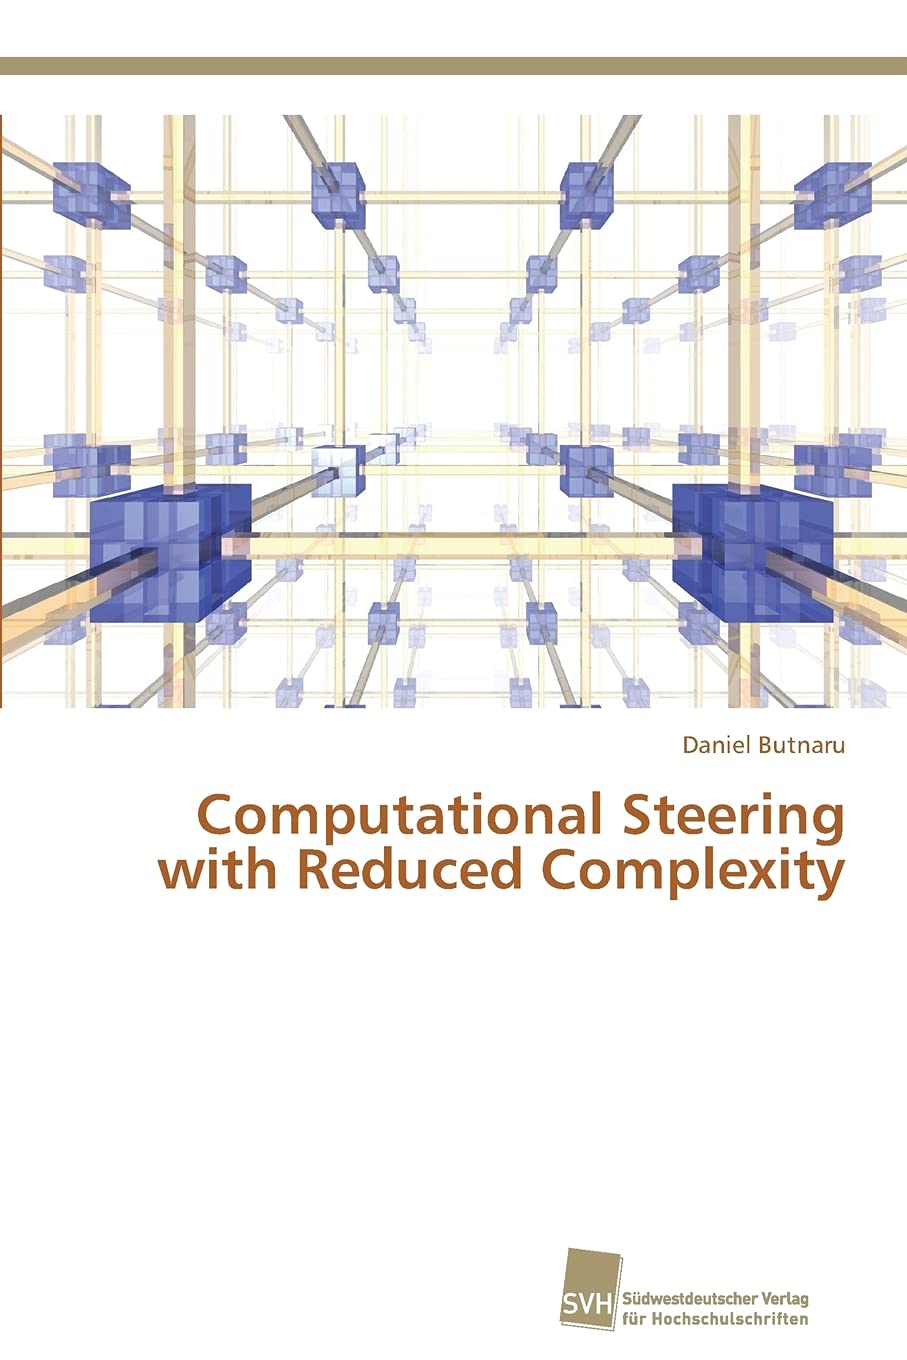 Computational steering